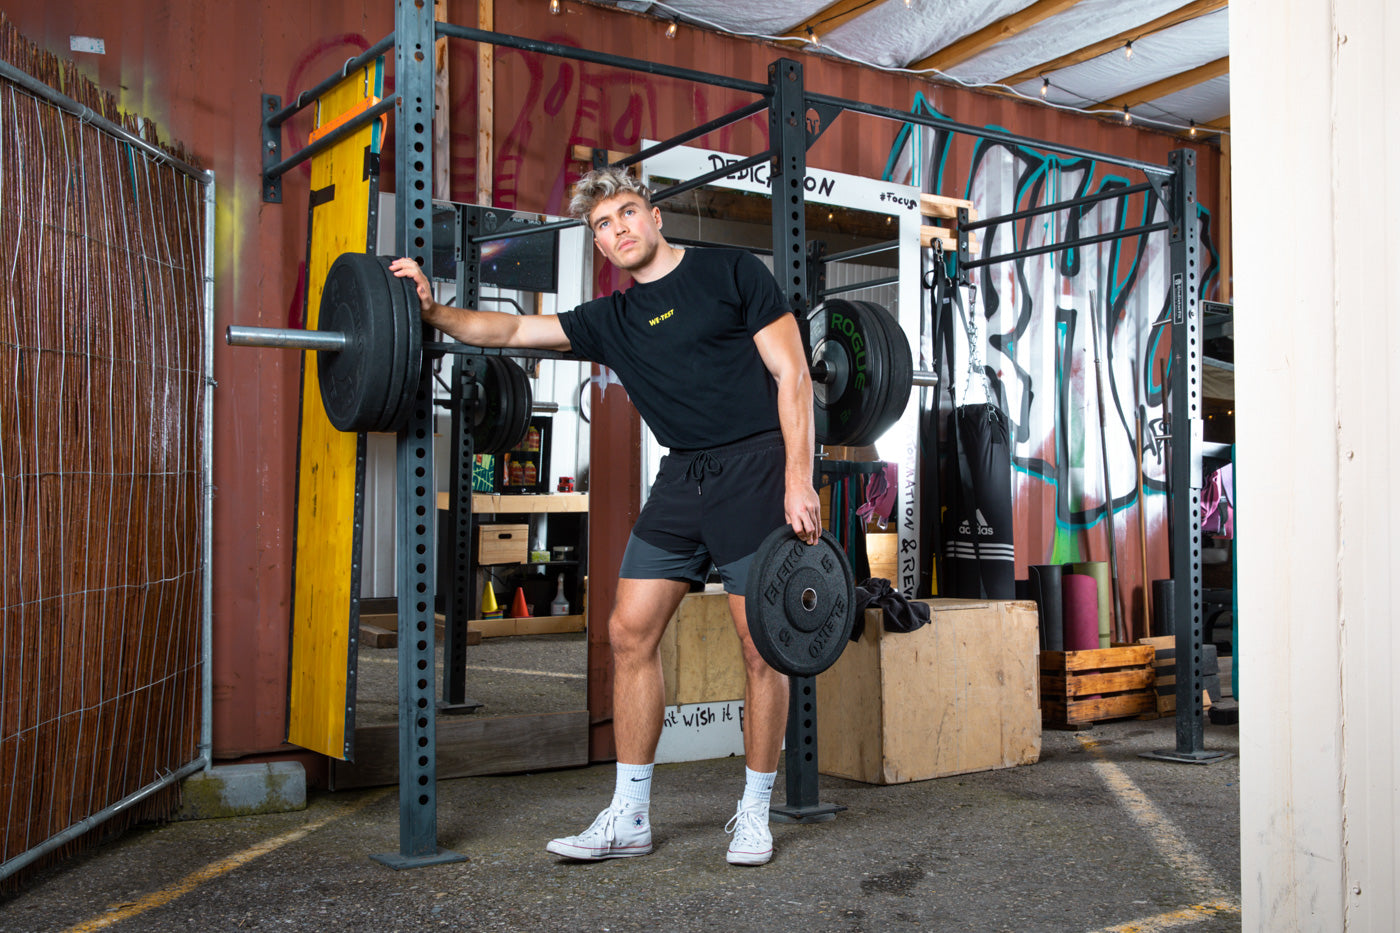 Ein Mann trainiert intensiv im Fitnessstudio und stellt seine Stärke und Entschlossenheit zur Schau. Gekleidet in ein sportliches T-Shirt von WE•TRST, zeigt er seine Unterstützung für Zusammenarbeit und Vertrauen.